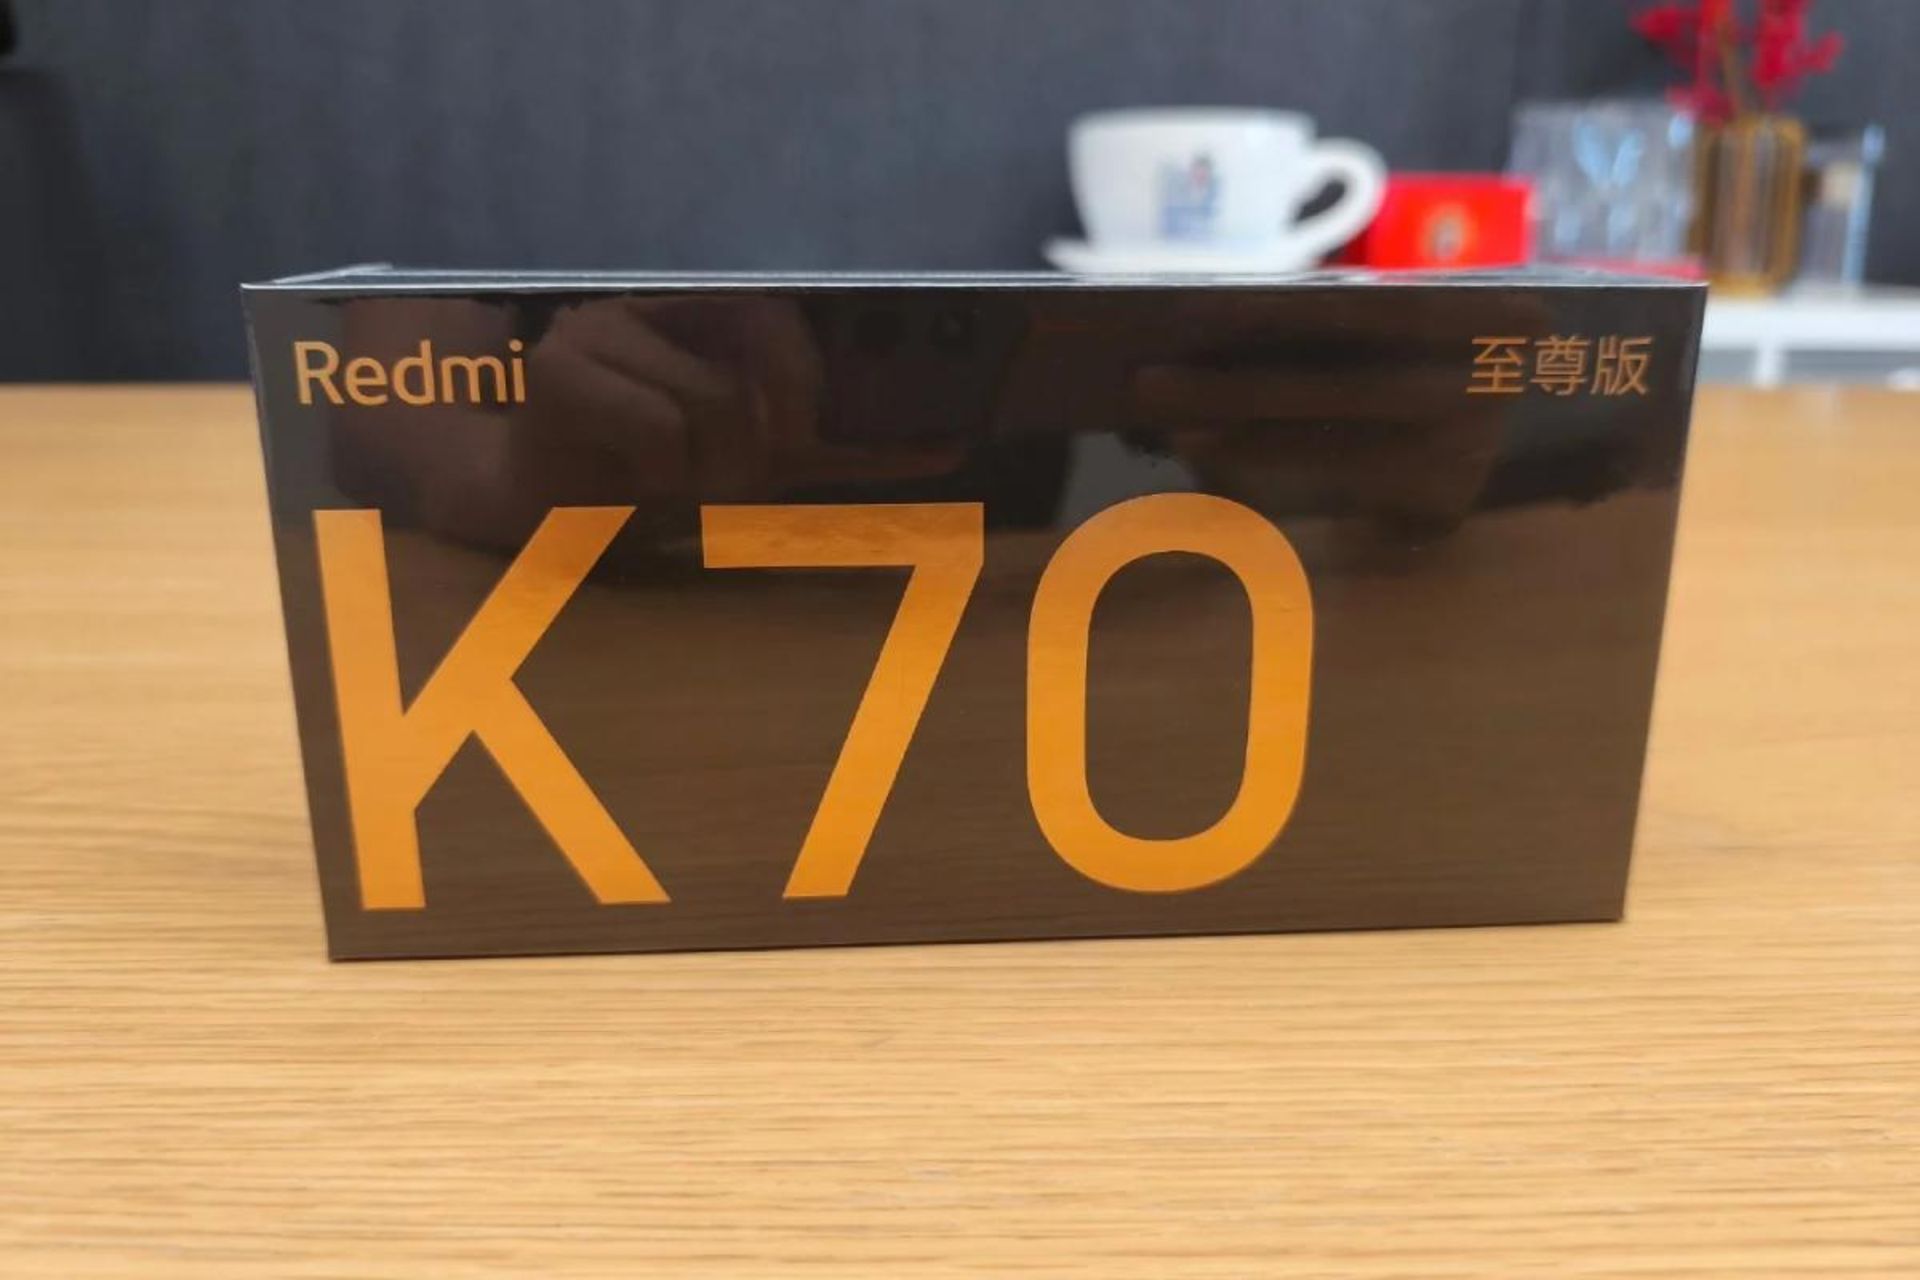 جعبه خرده فروش گوشی ردمی K70 اولترا روی میز